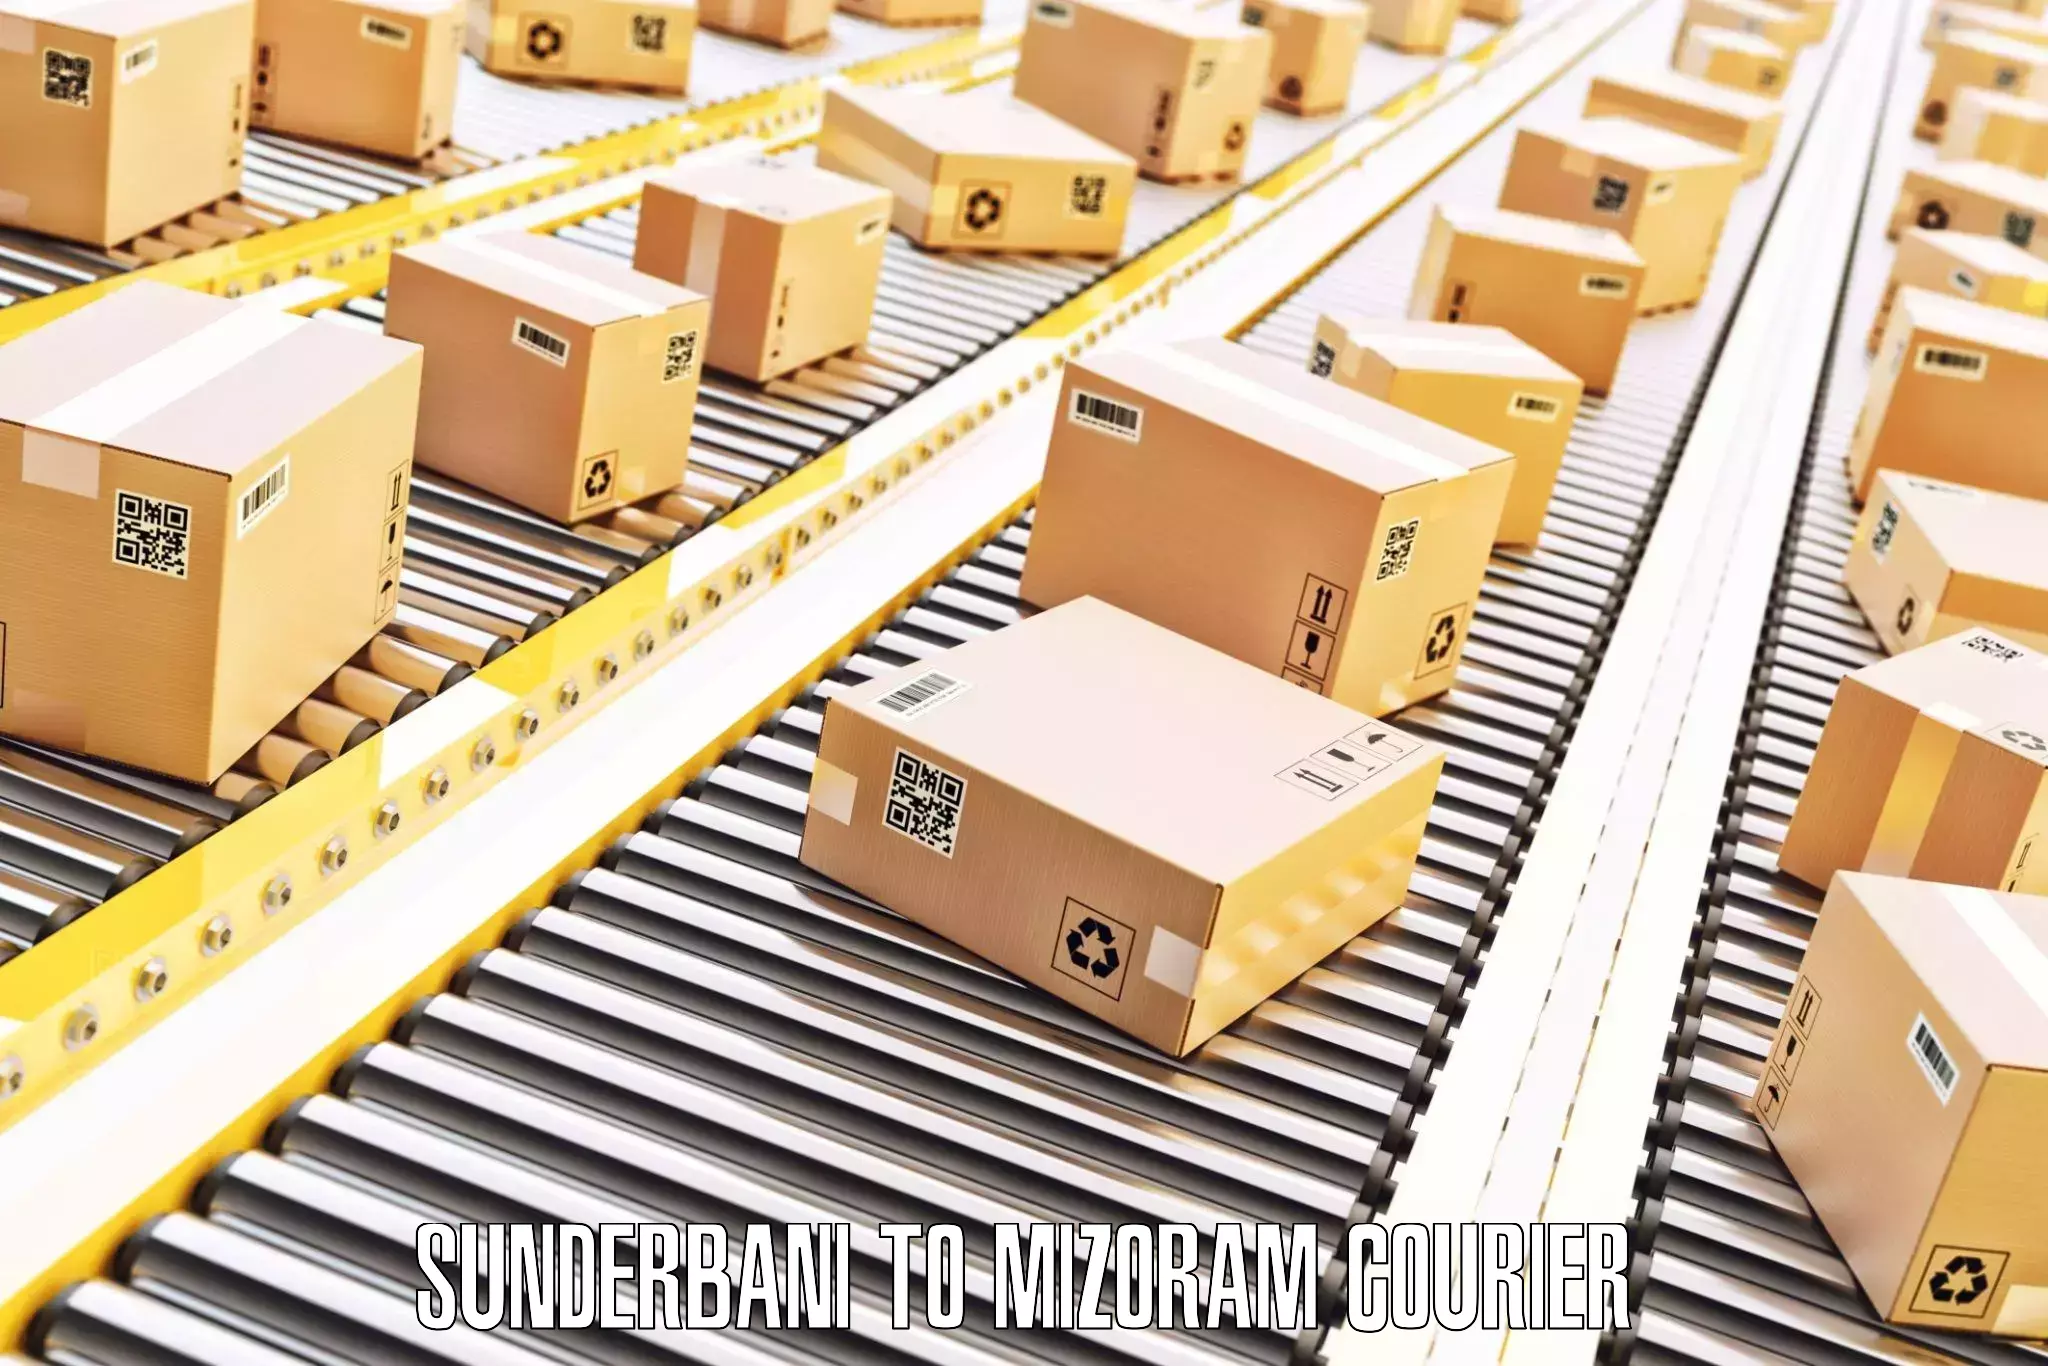 Luggage shipment processing Sunderbani to Mamit